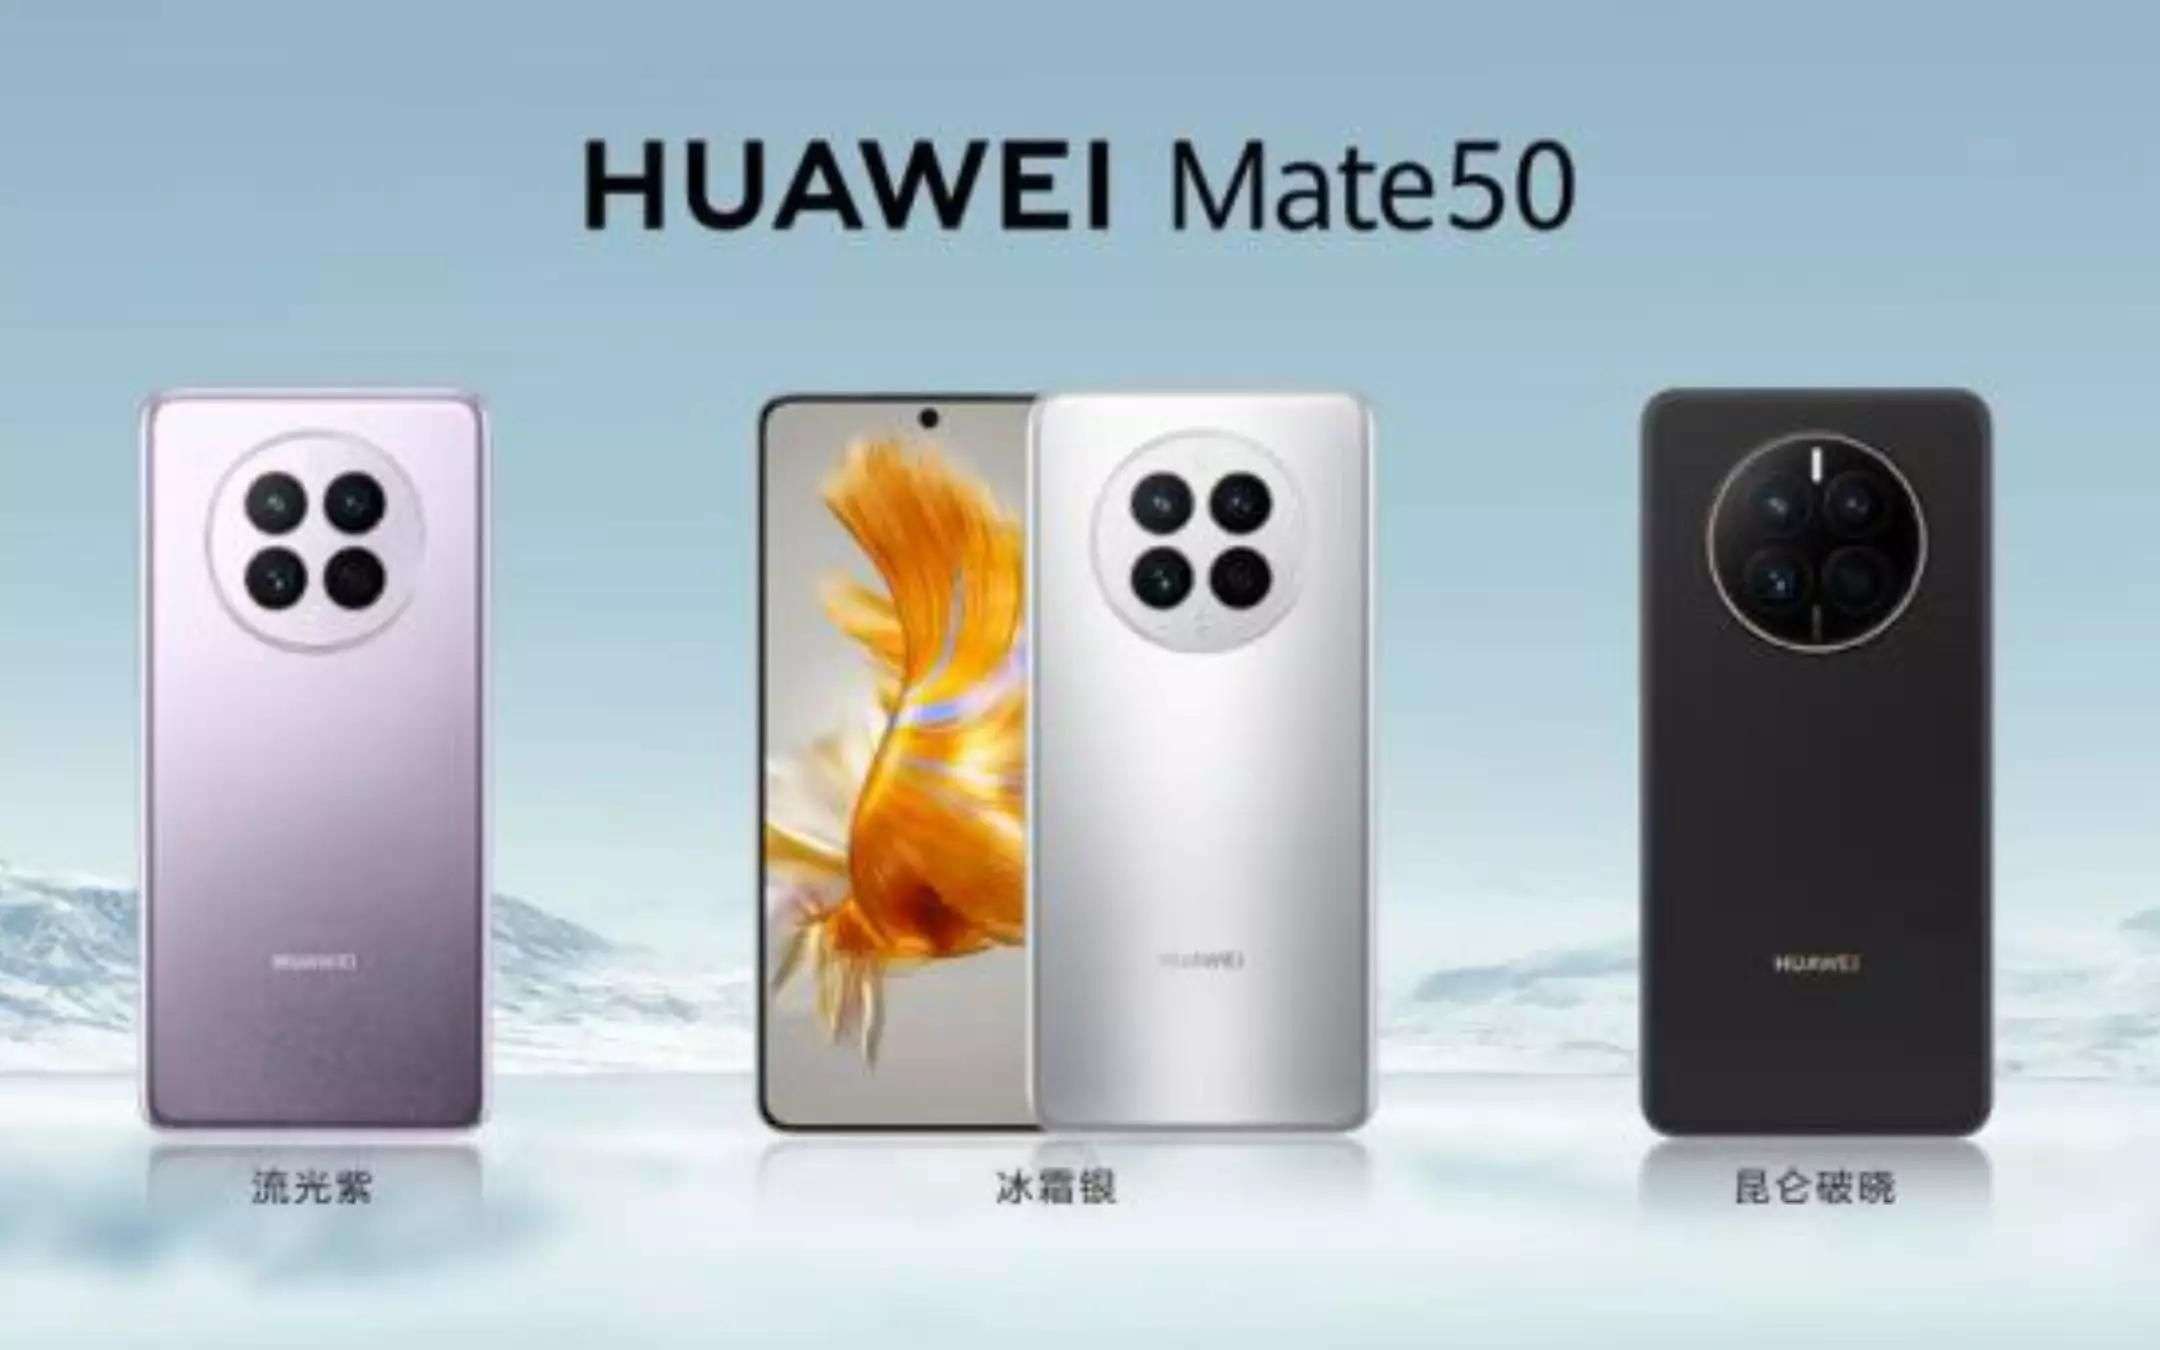 Tutti pazzi per il nuovo Huawei Mate 50: Sold Out in pochi secondi